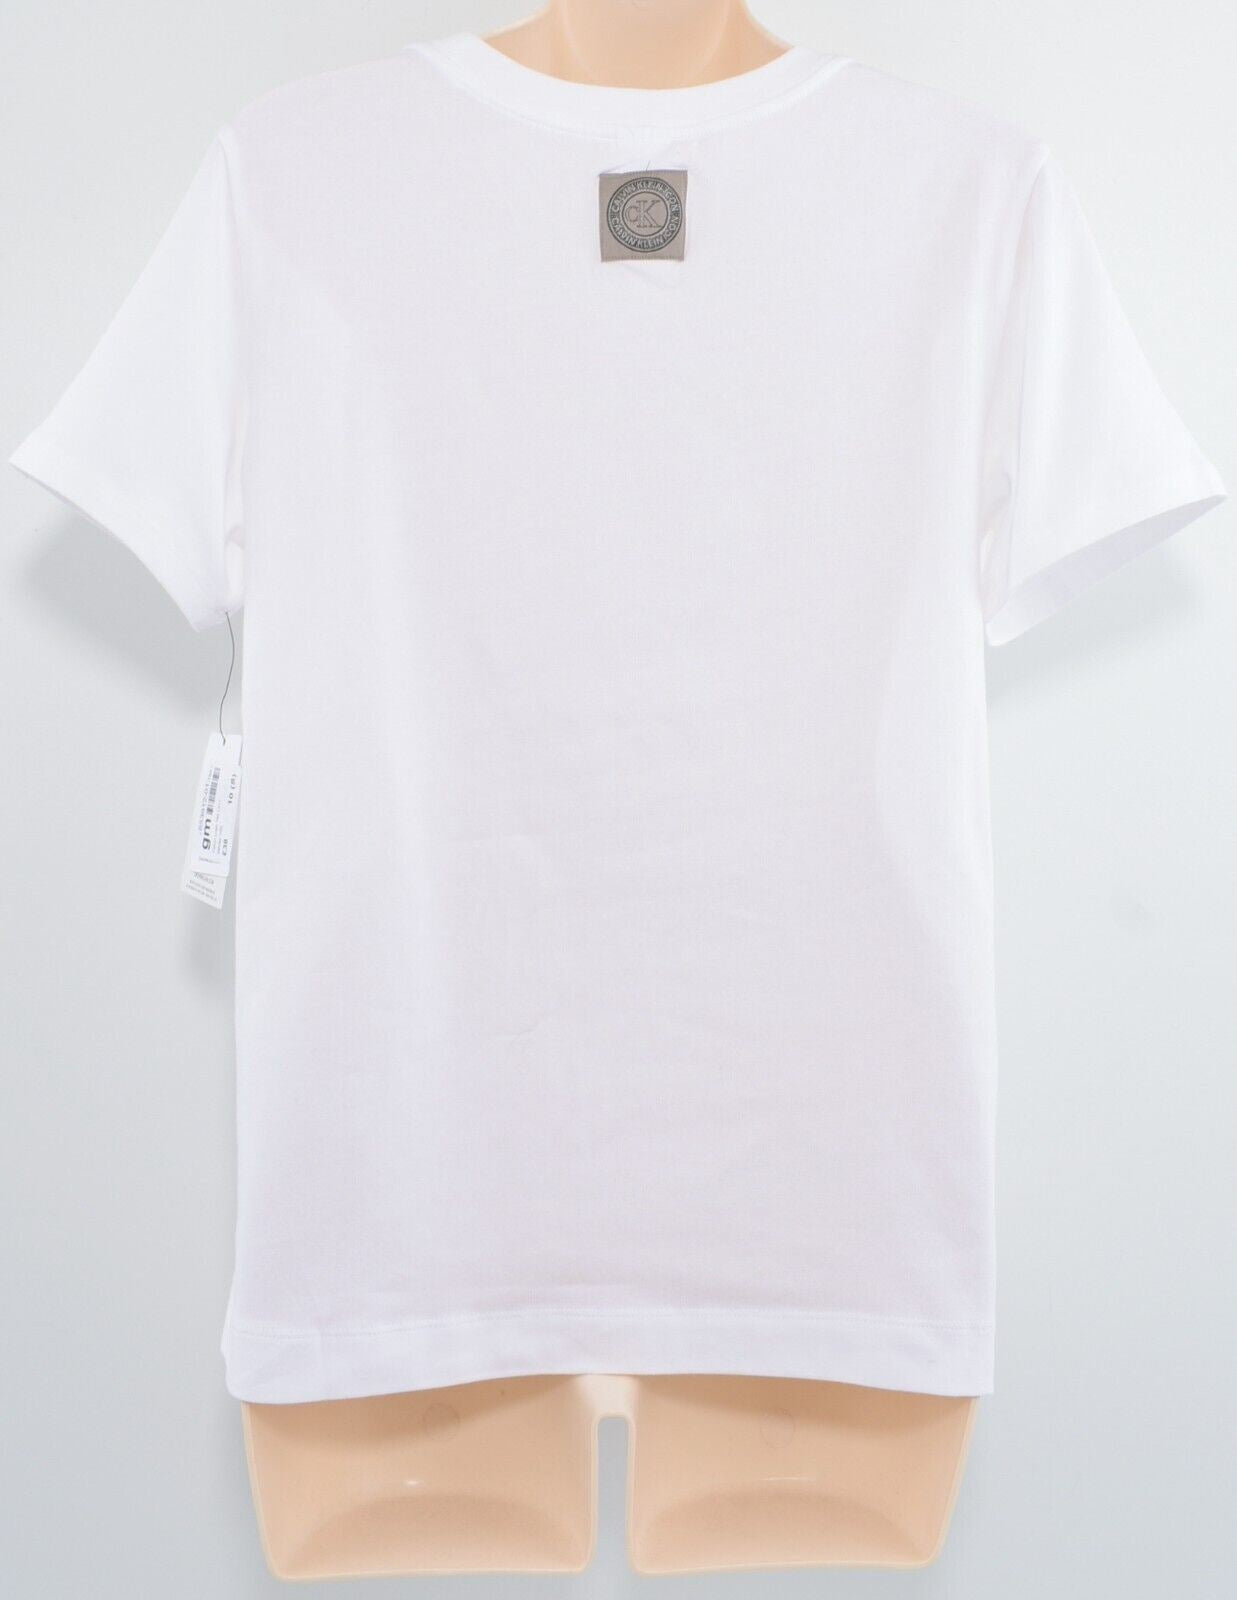 CALVIN KLEIN Women's ICON Logo Lounging / Pyjama T-shirt Top, White, size S